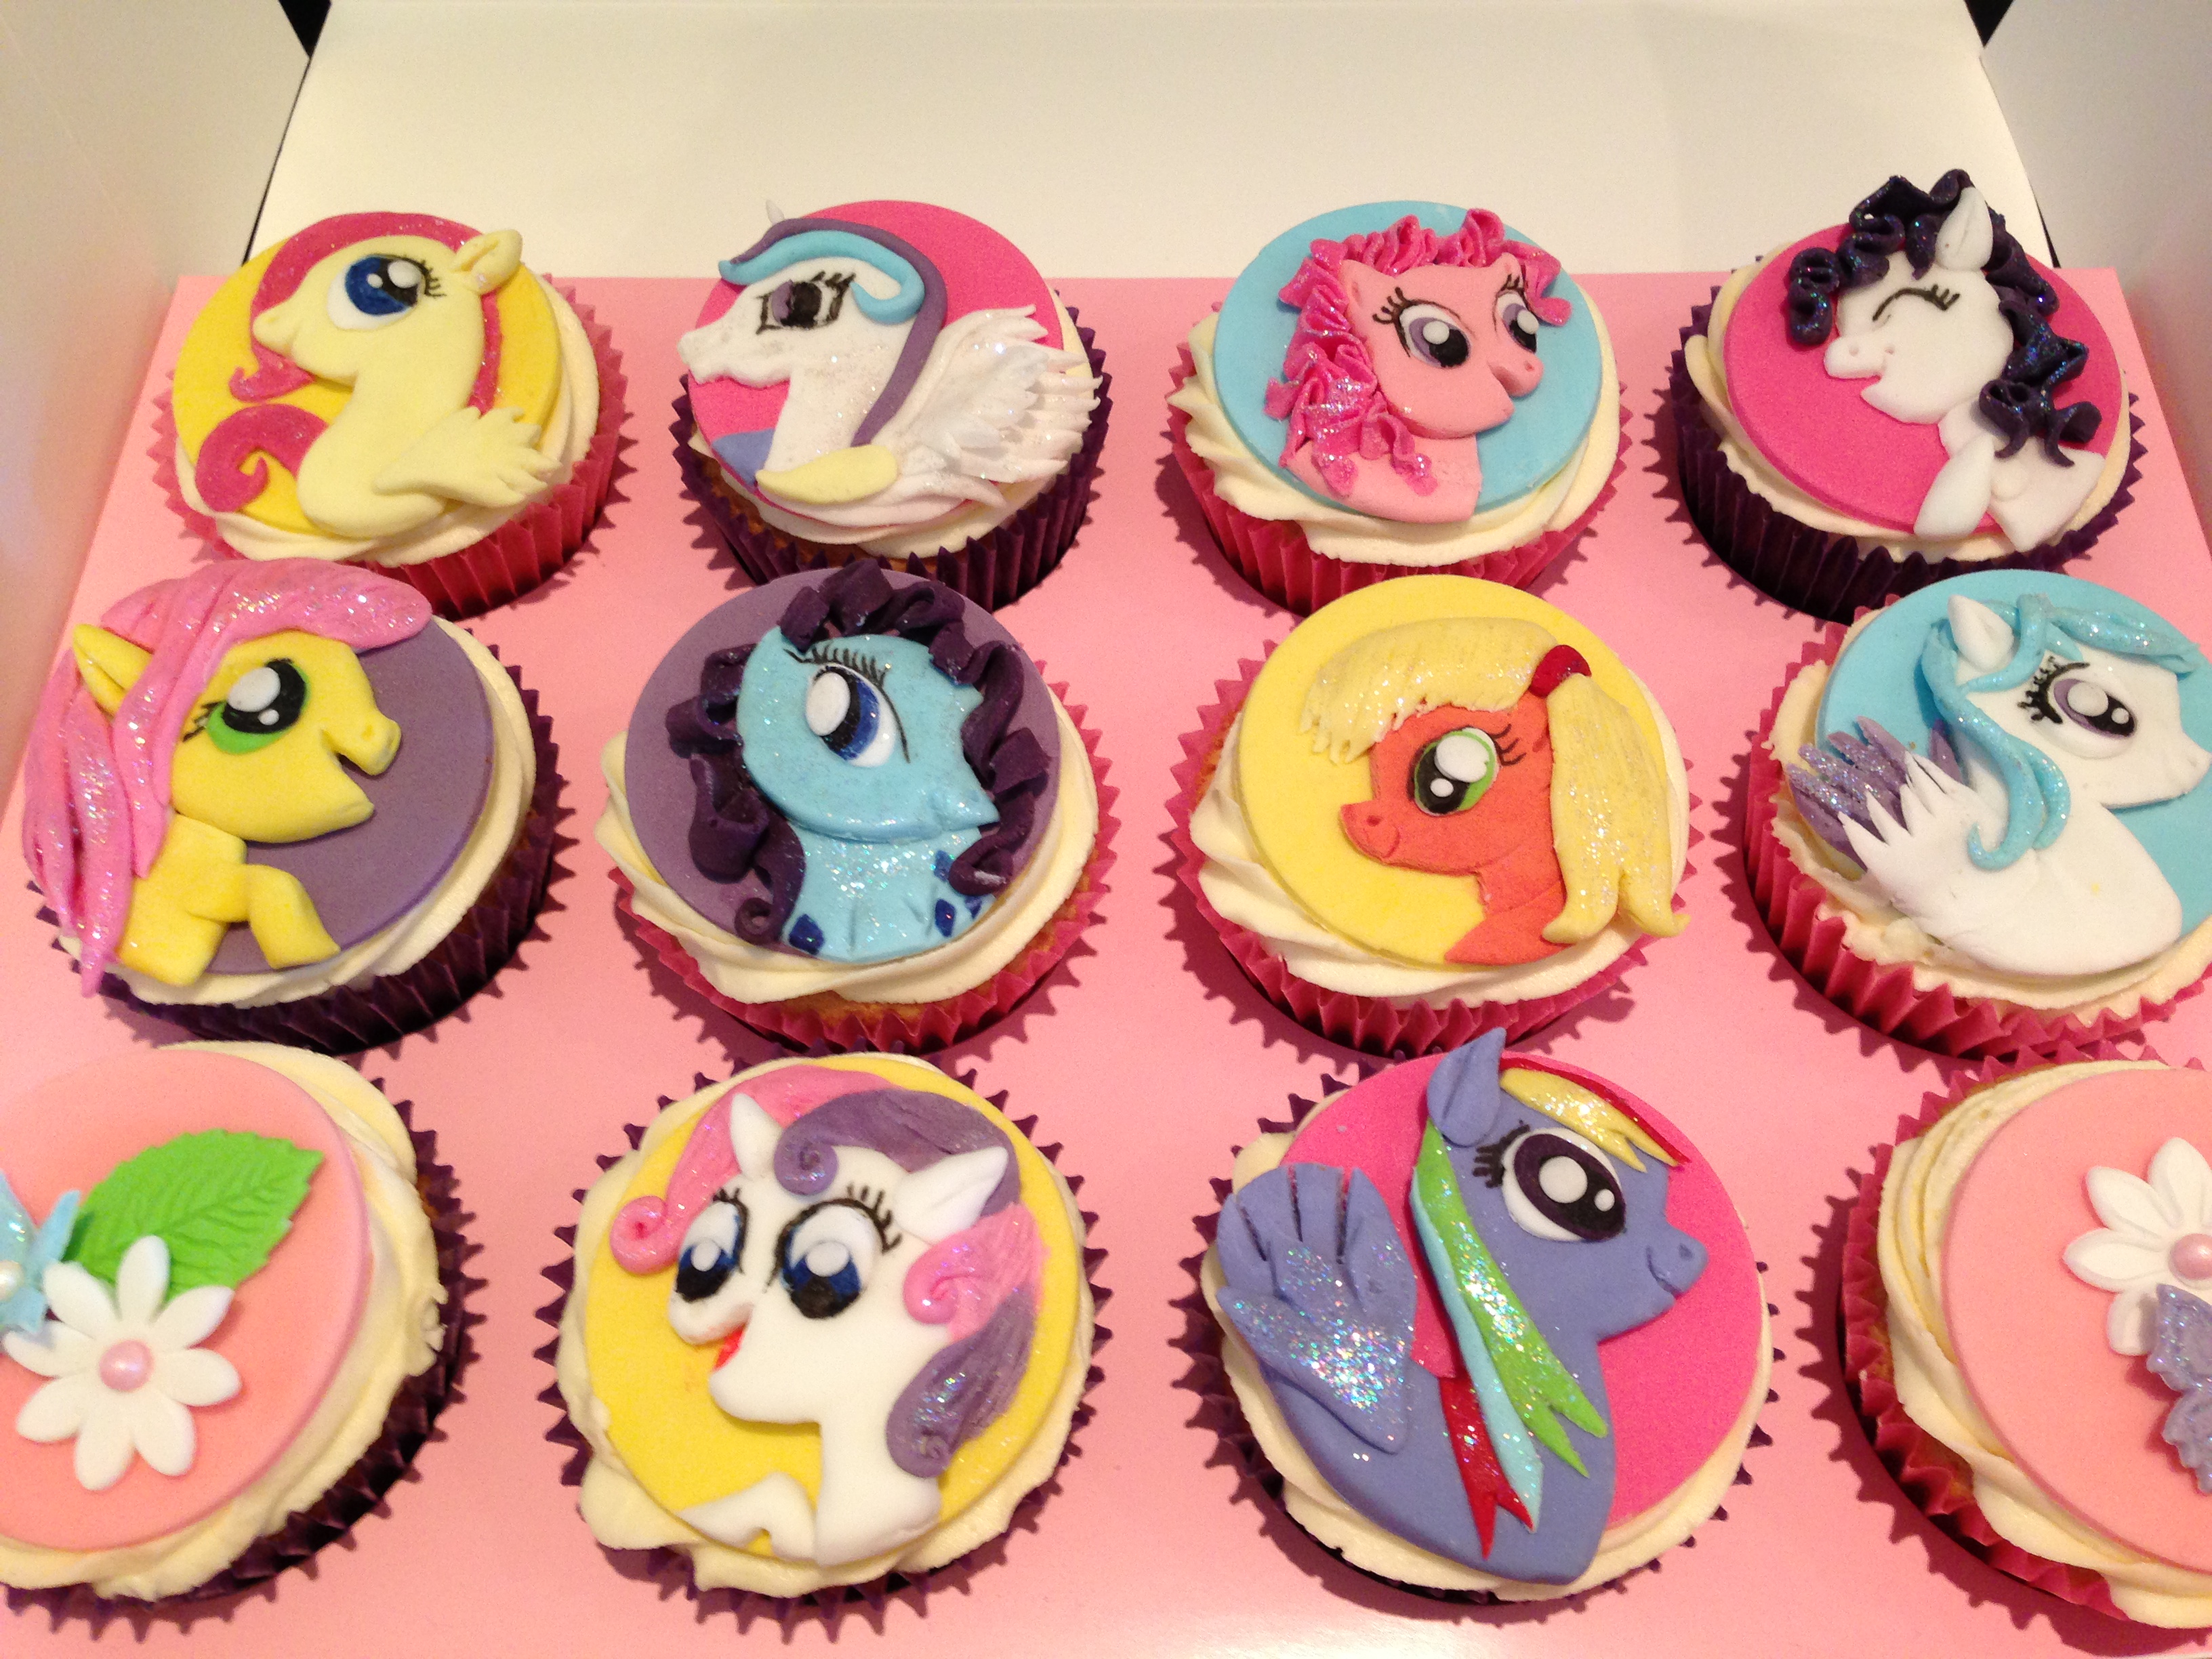 my little pony cupcakes